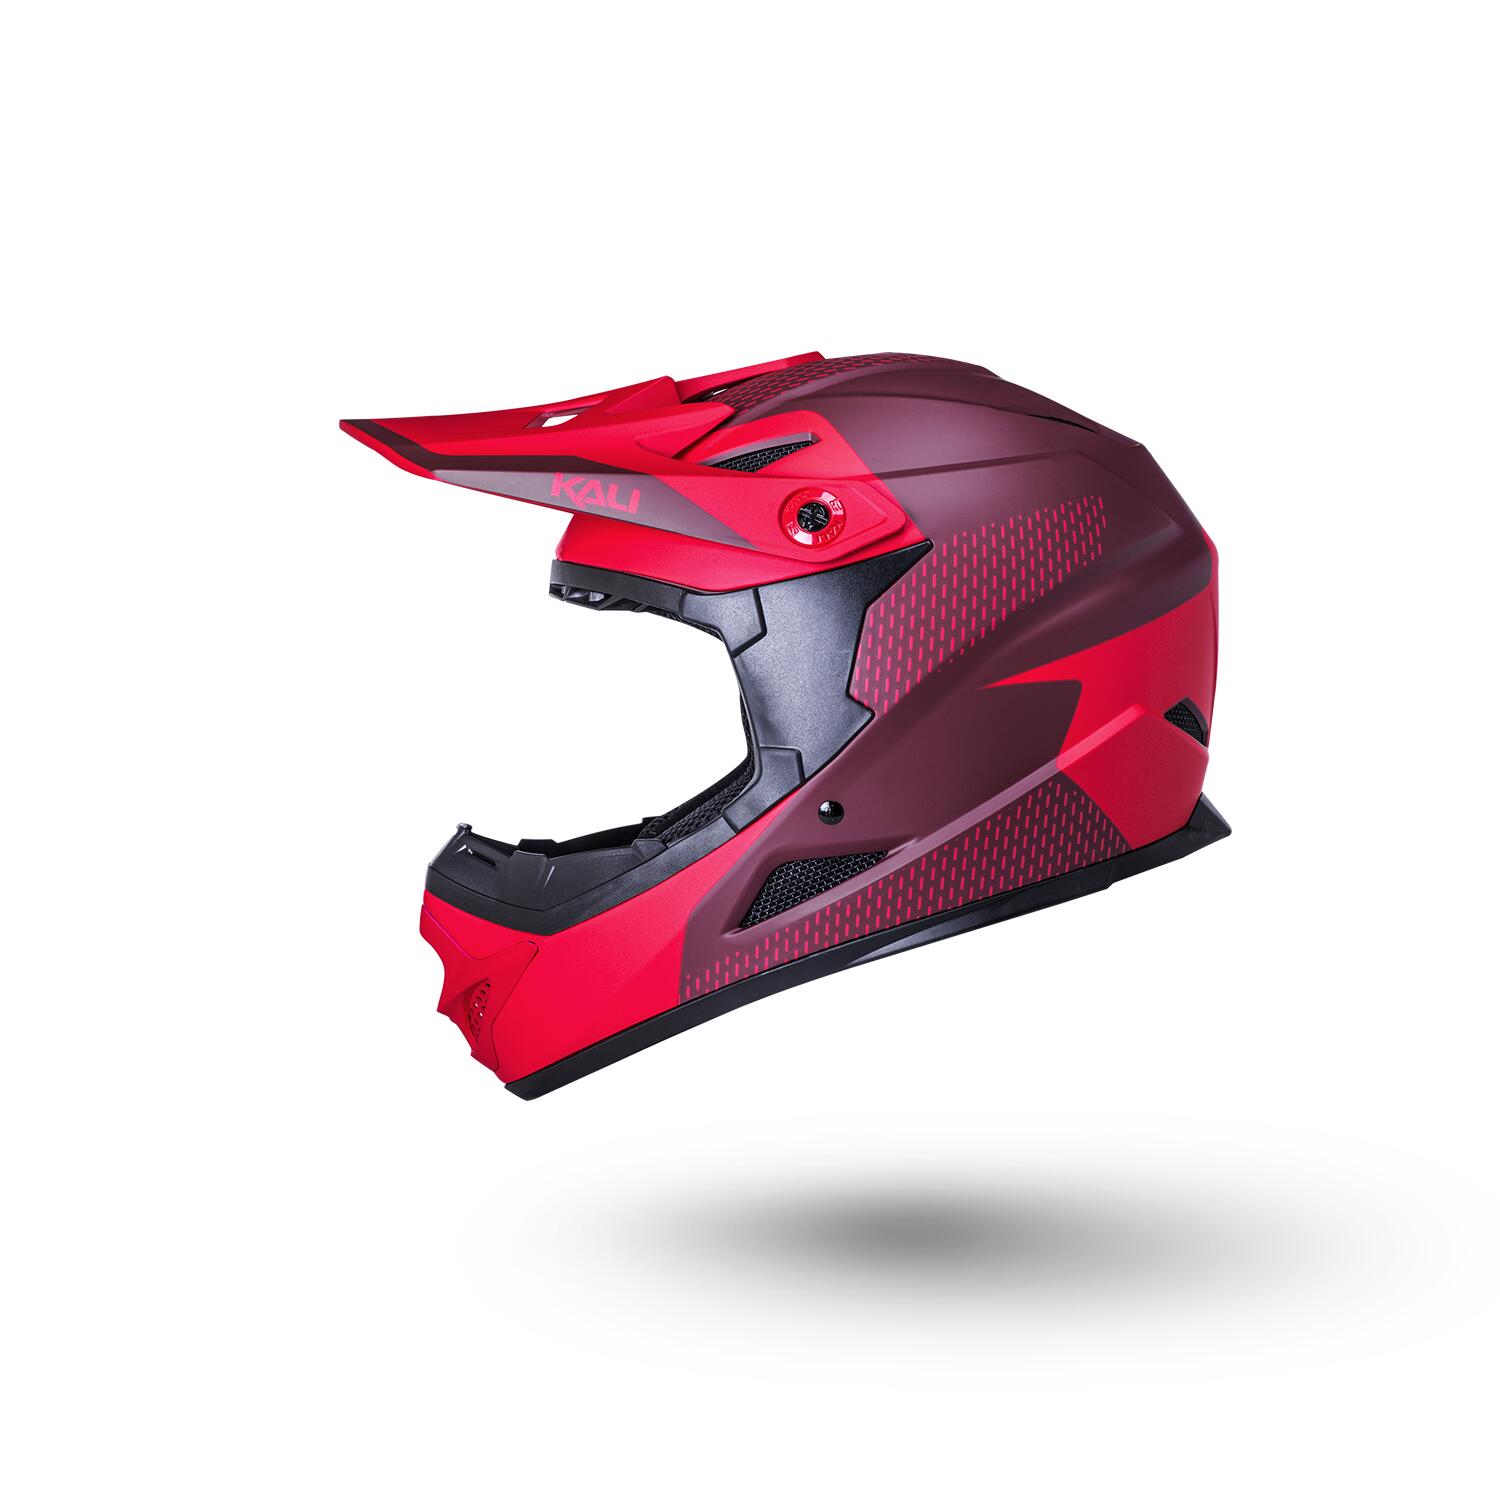 Kali Zoka Full Face Helmet - Dash Matt Red / Burgundy 2/5